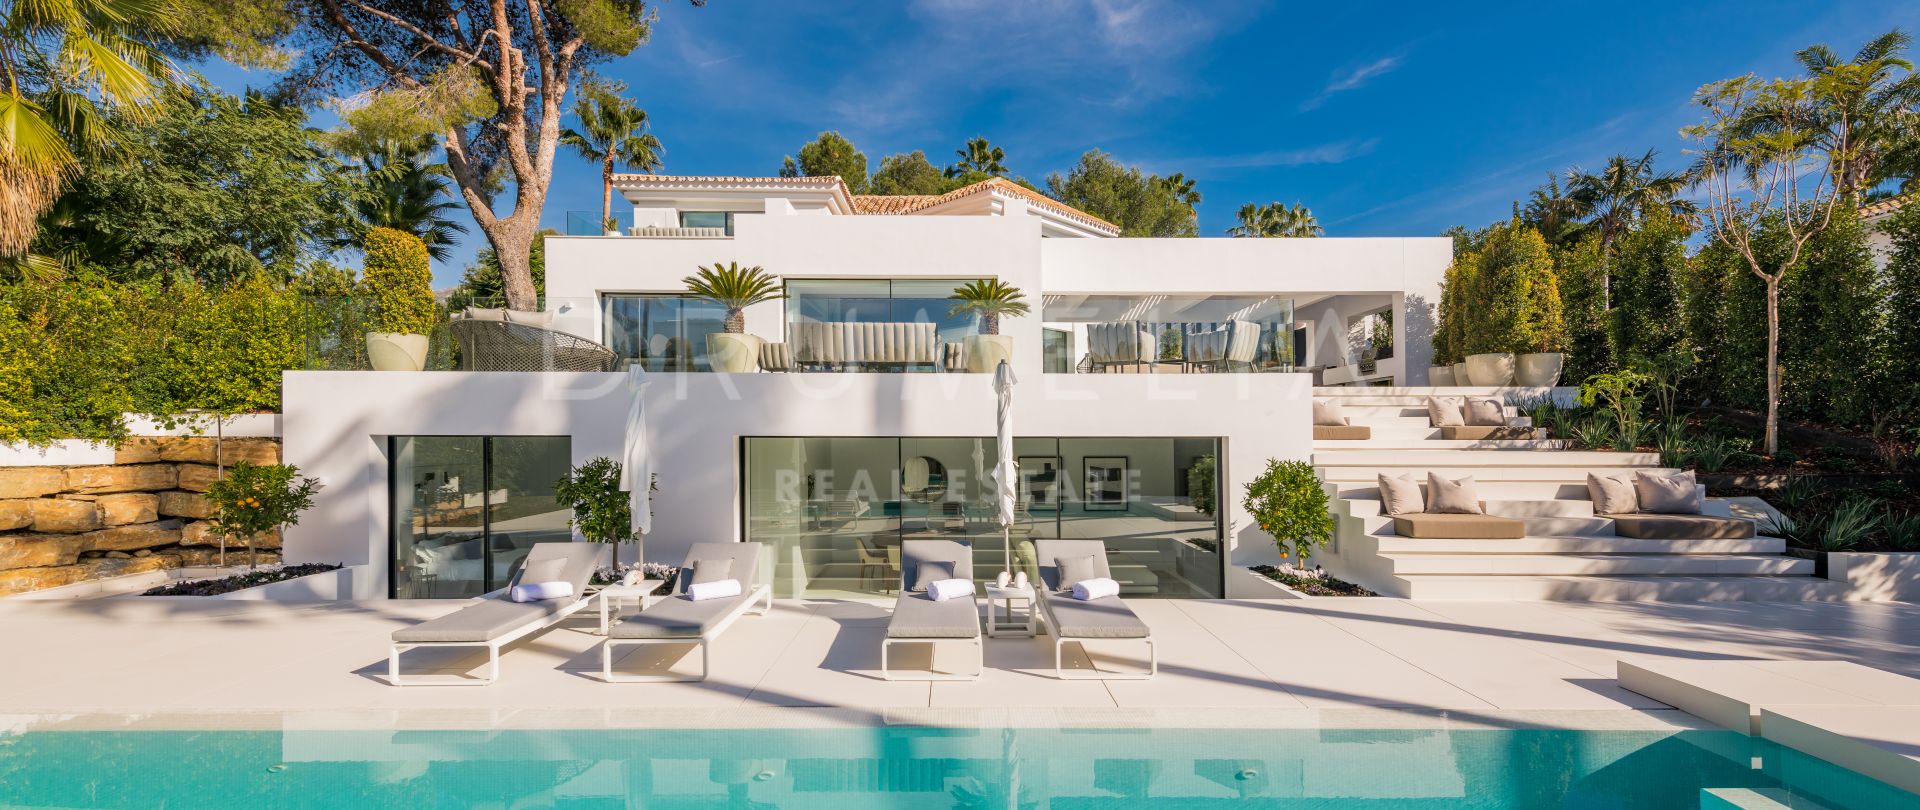 Casa Laranja - Impresionane Villa de lujo de diseño moderno en Nueva Andalucia, Marbella